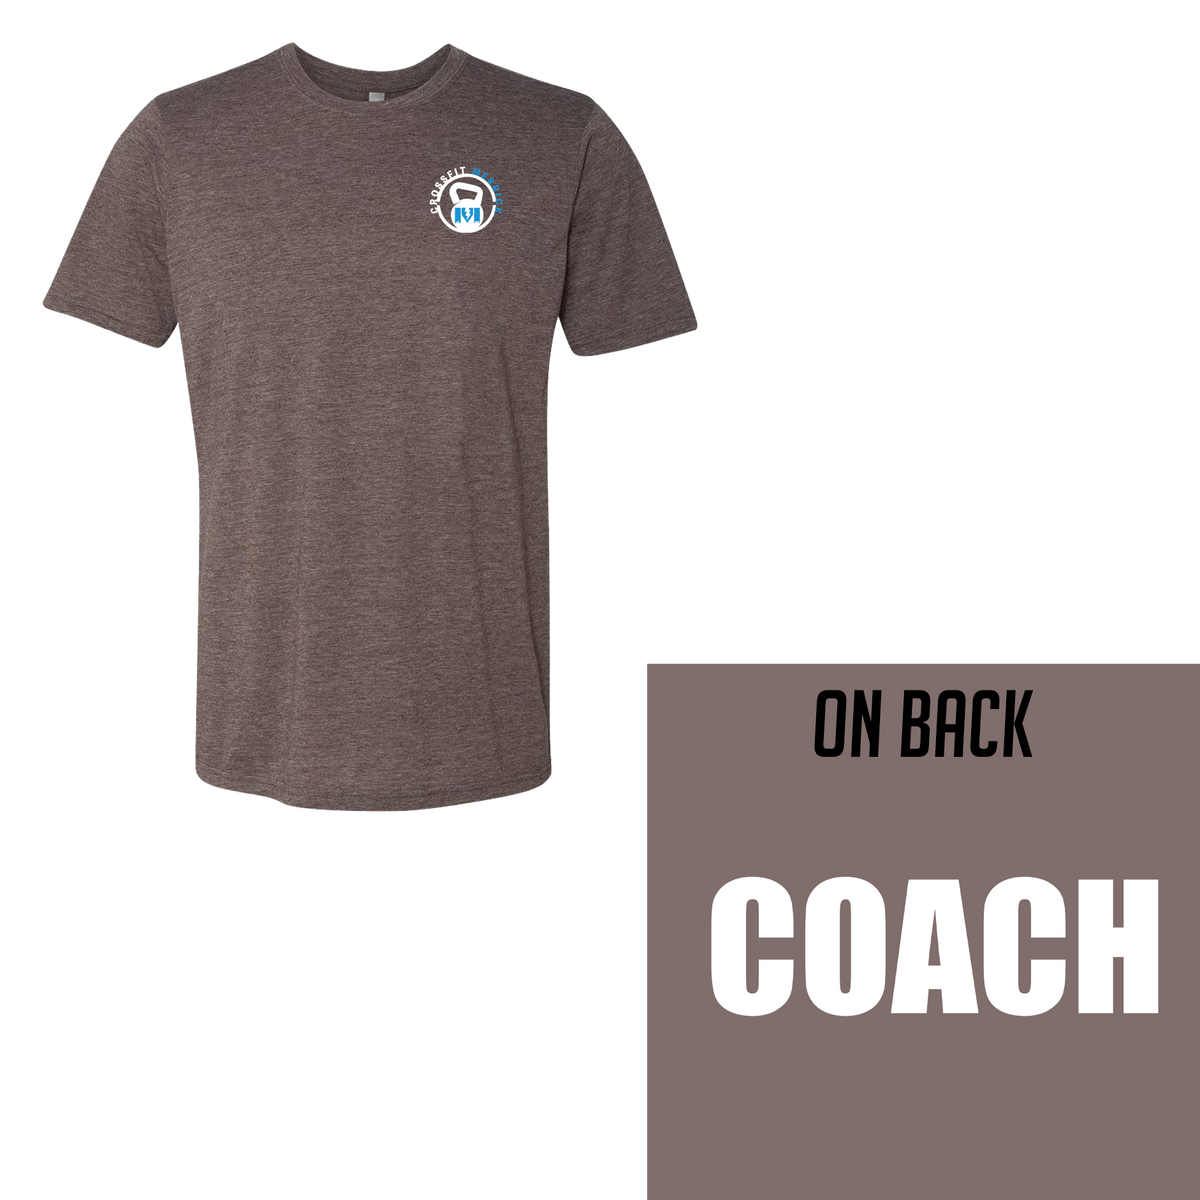 Merrick Crossfit Coaching Cotton T-Shirt